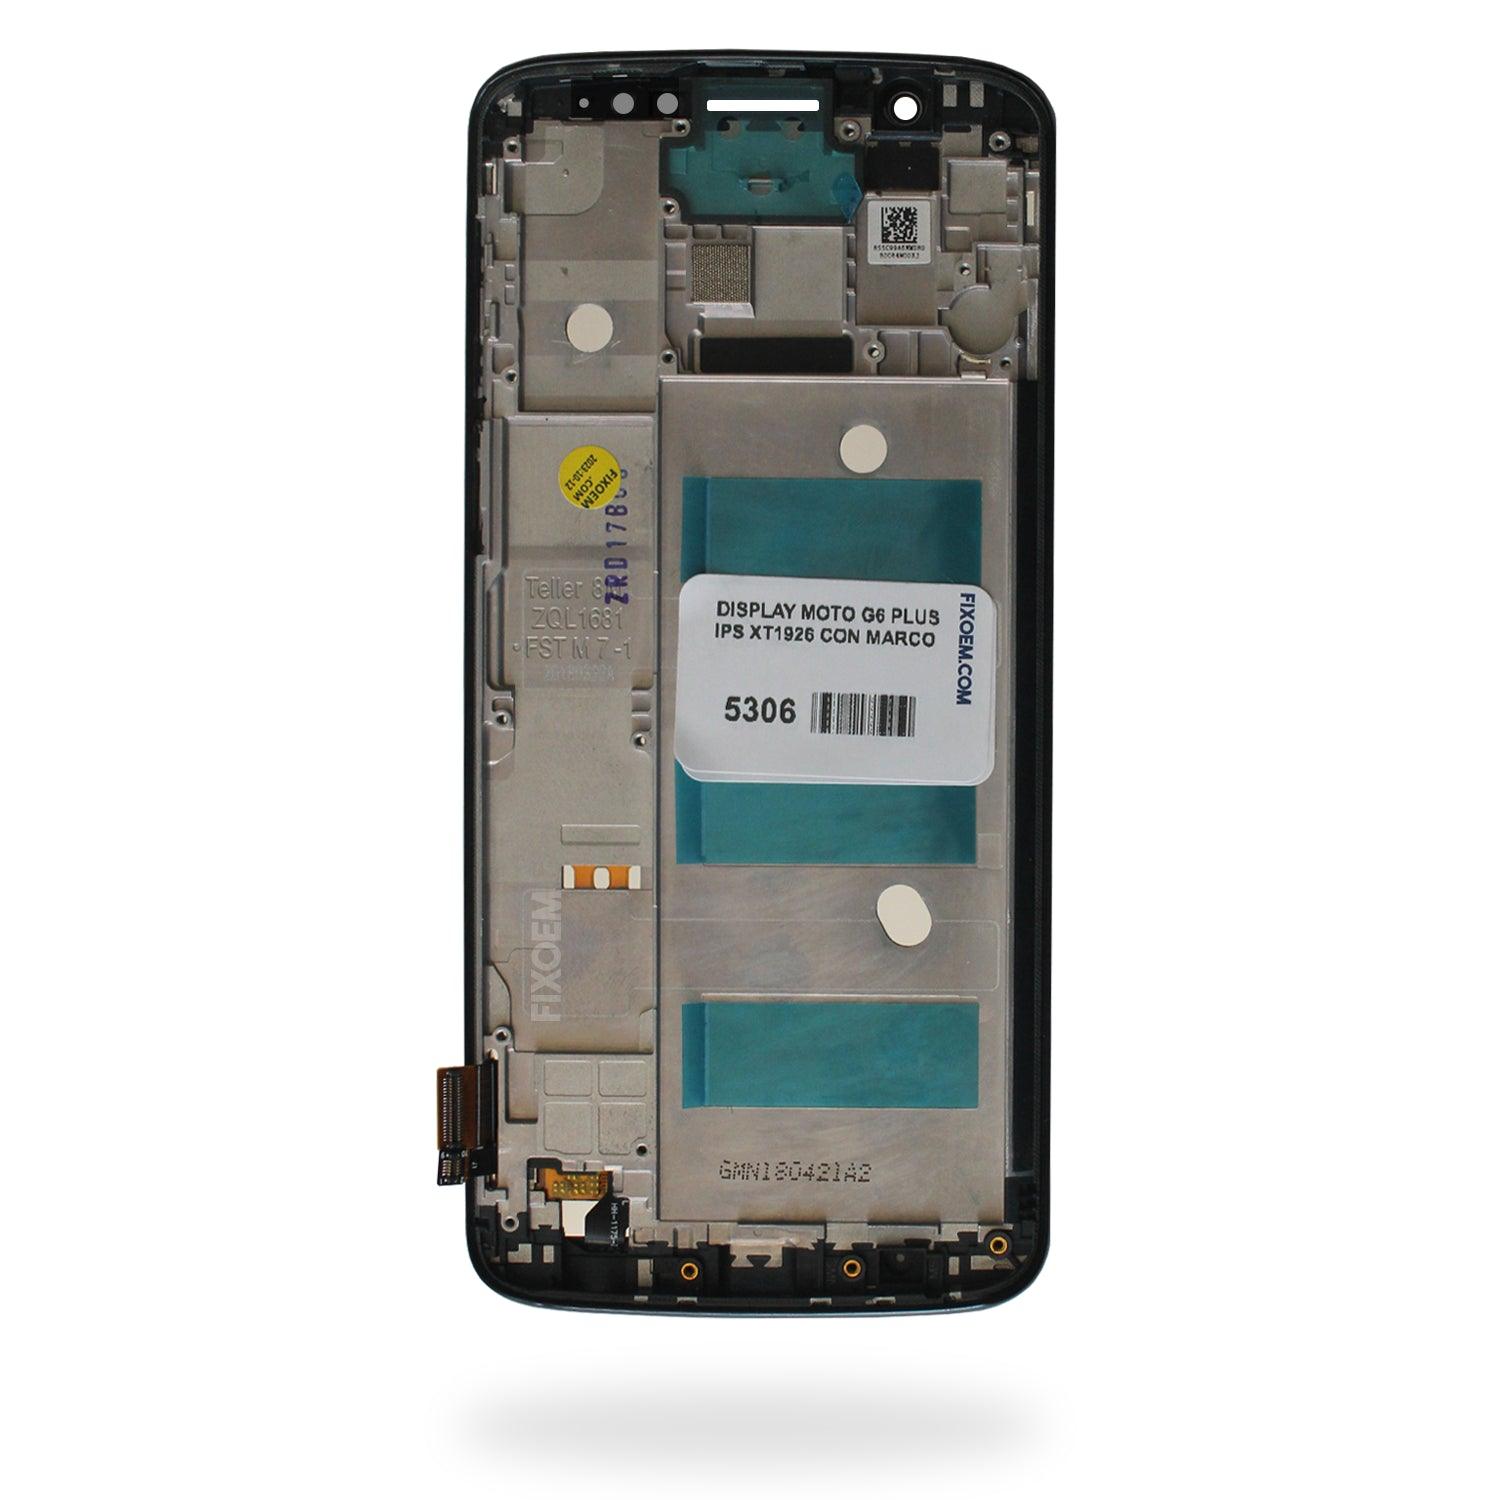 Display Moto G6 Plus Xt1926 IPS a solo $ 320.00 Refaccion y puestos celulares, refurbish y microelectronica.- FixOEM